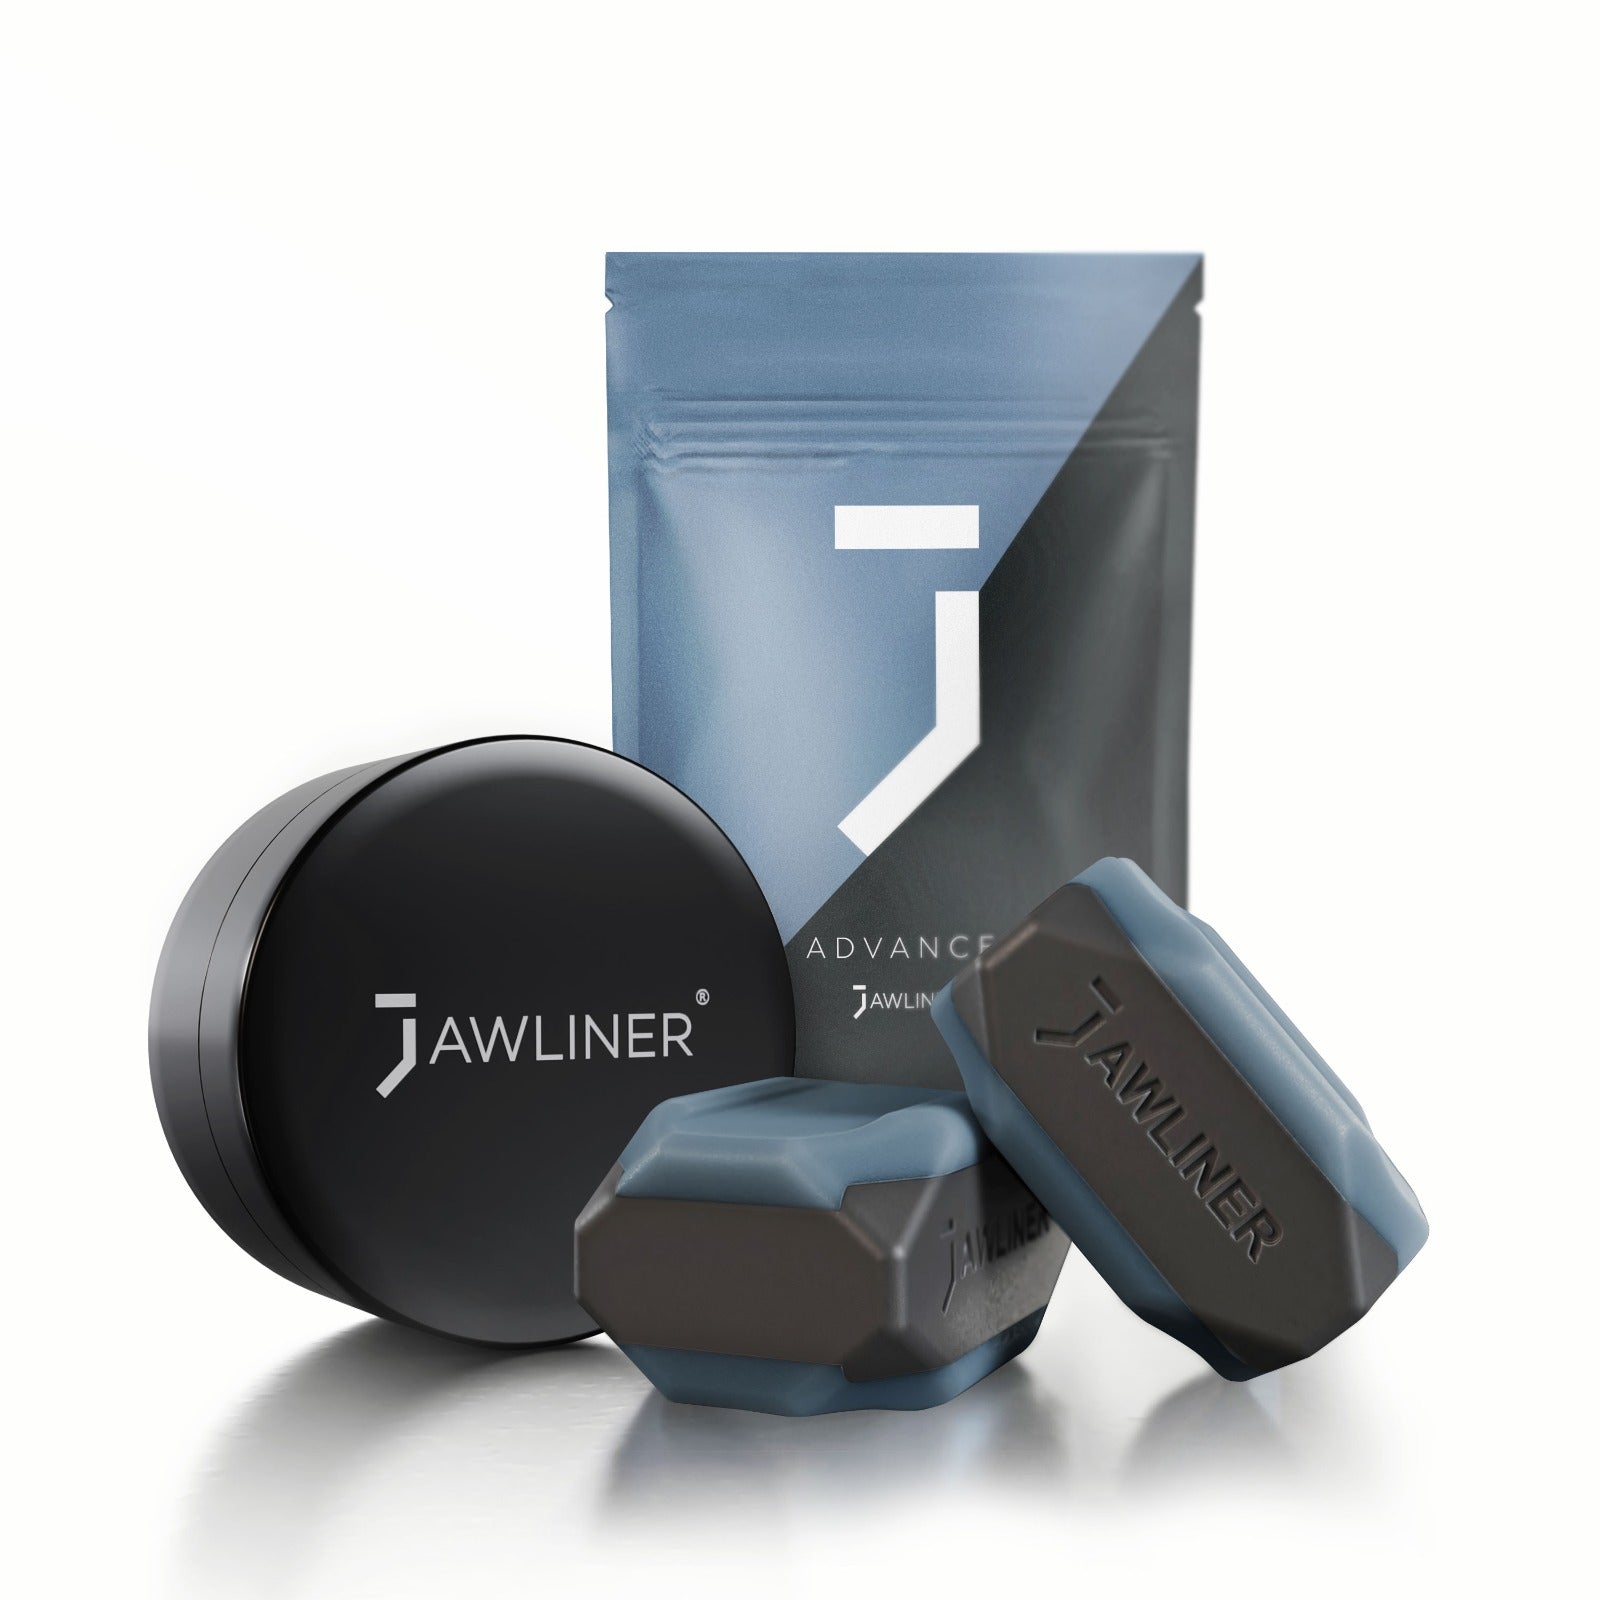 a imagem mostra o jawliner 3.0 advanced com a bolsa do jawliner e a lata do jawliner